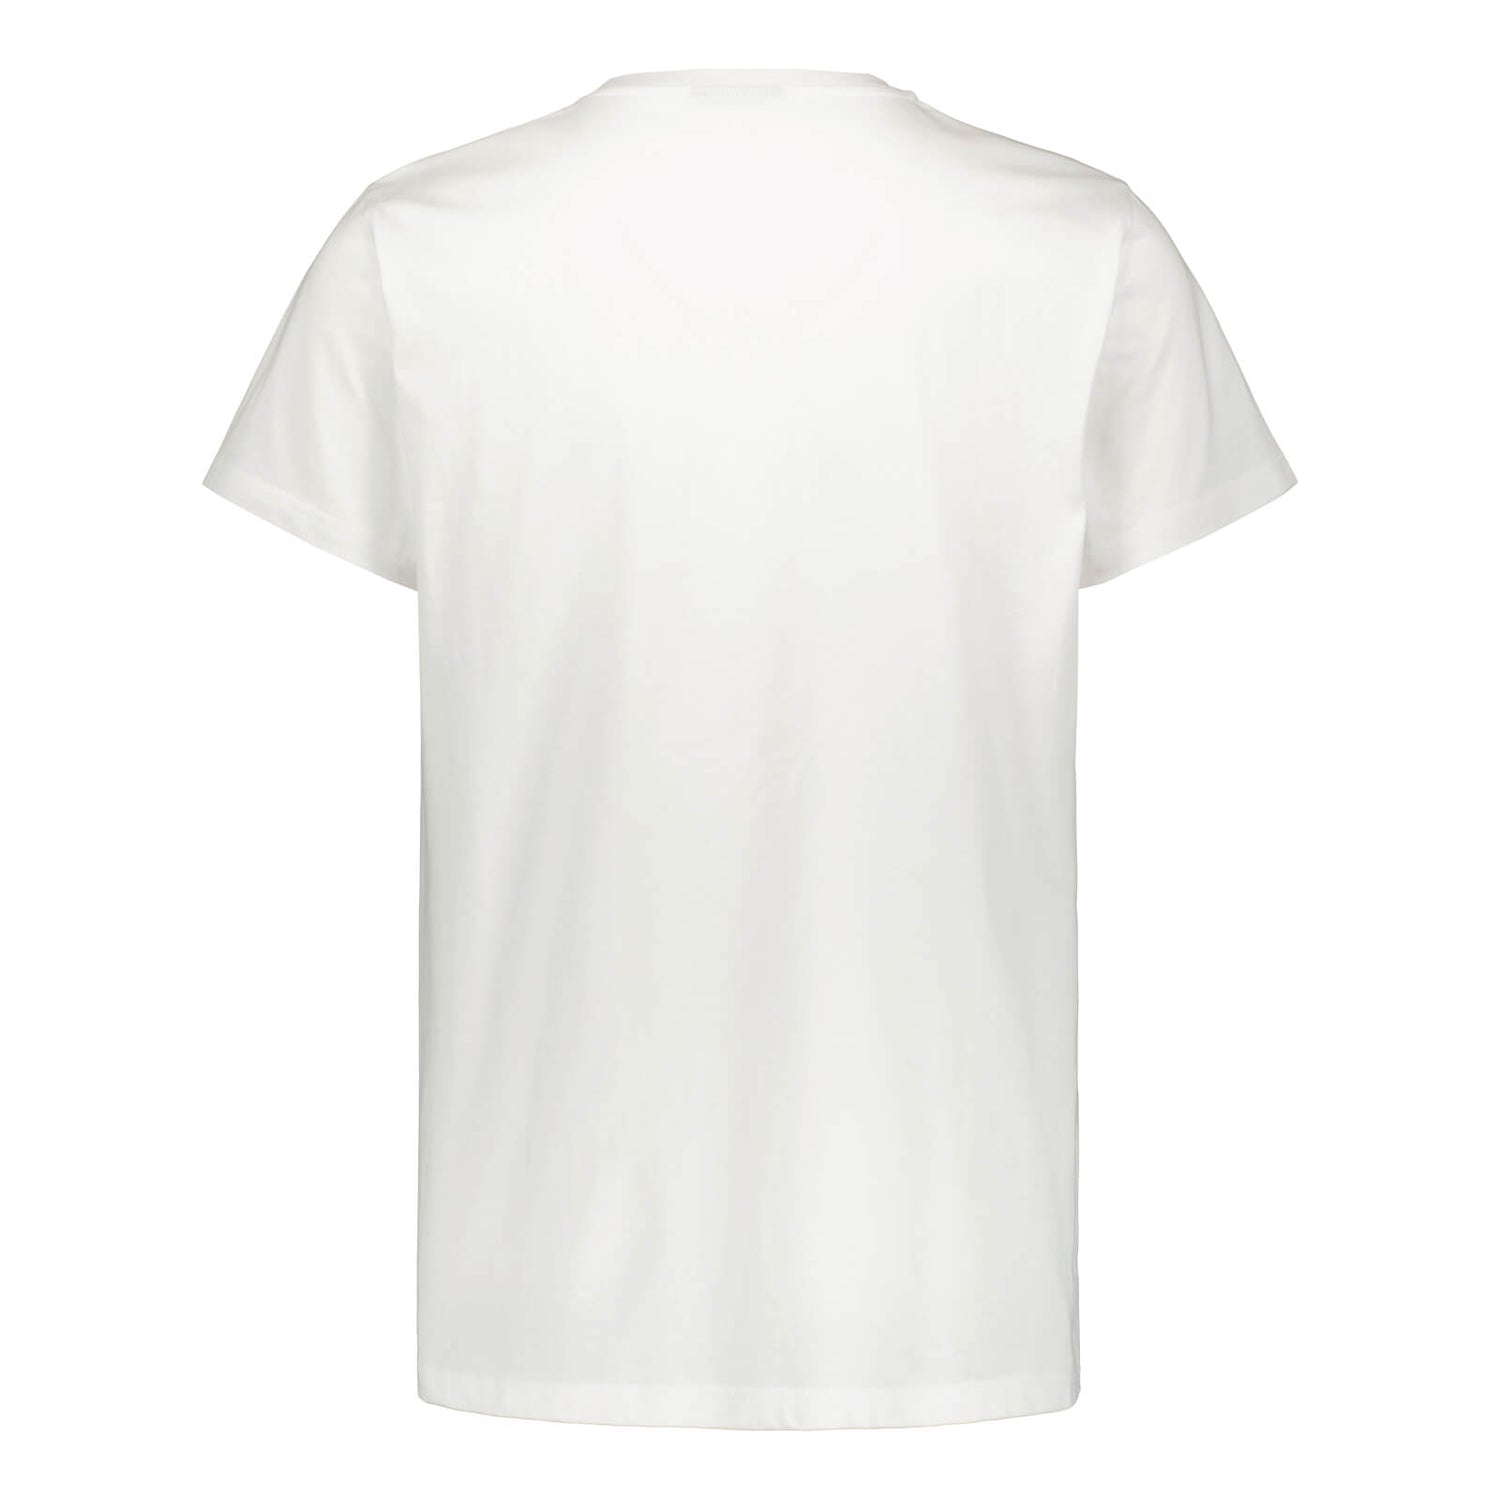 Littipeukku graafinen  t-paita, Valkoinen, Lapset